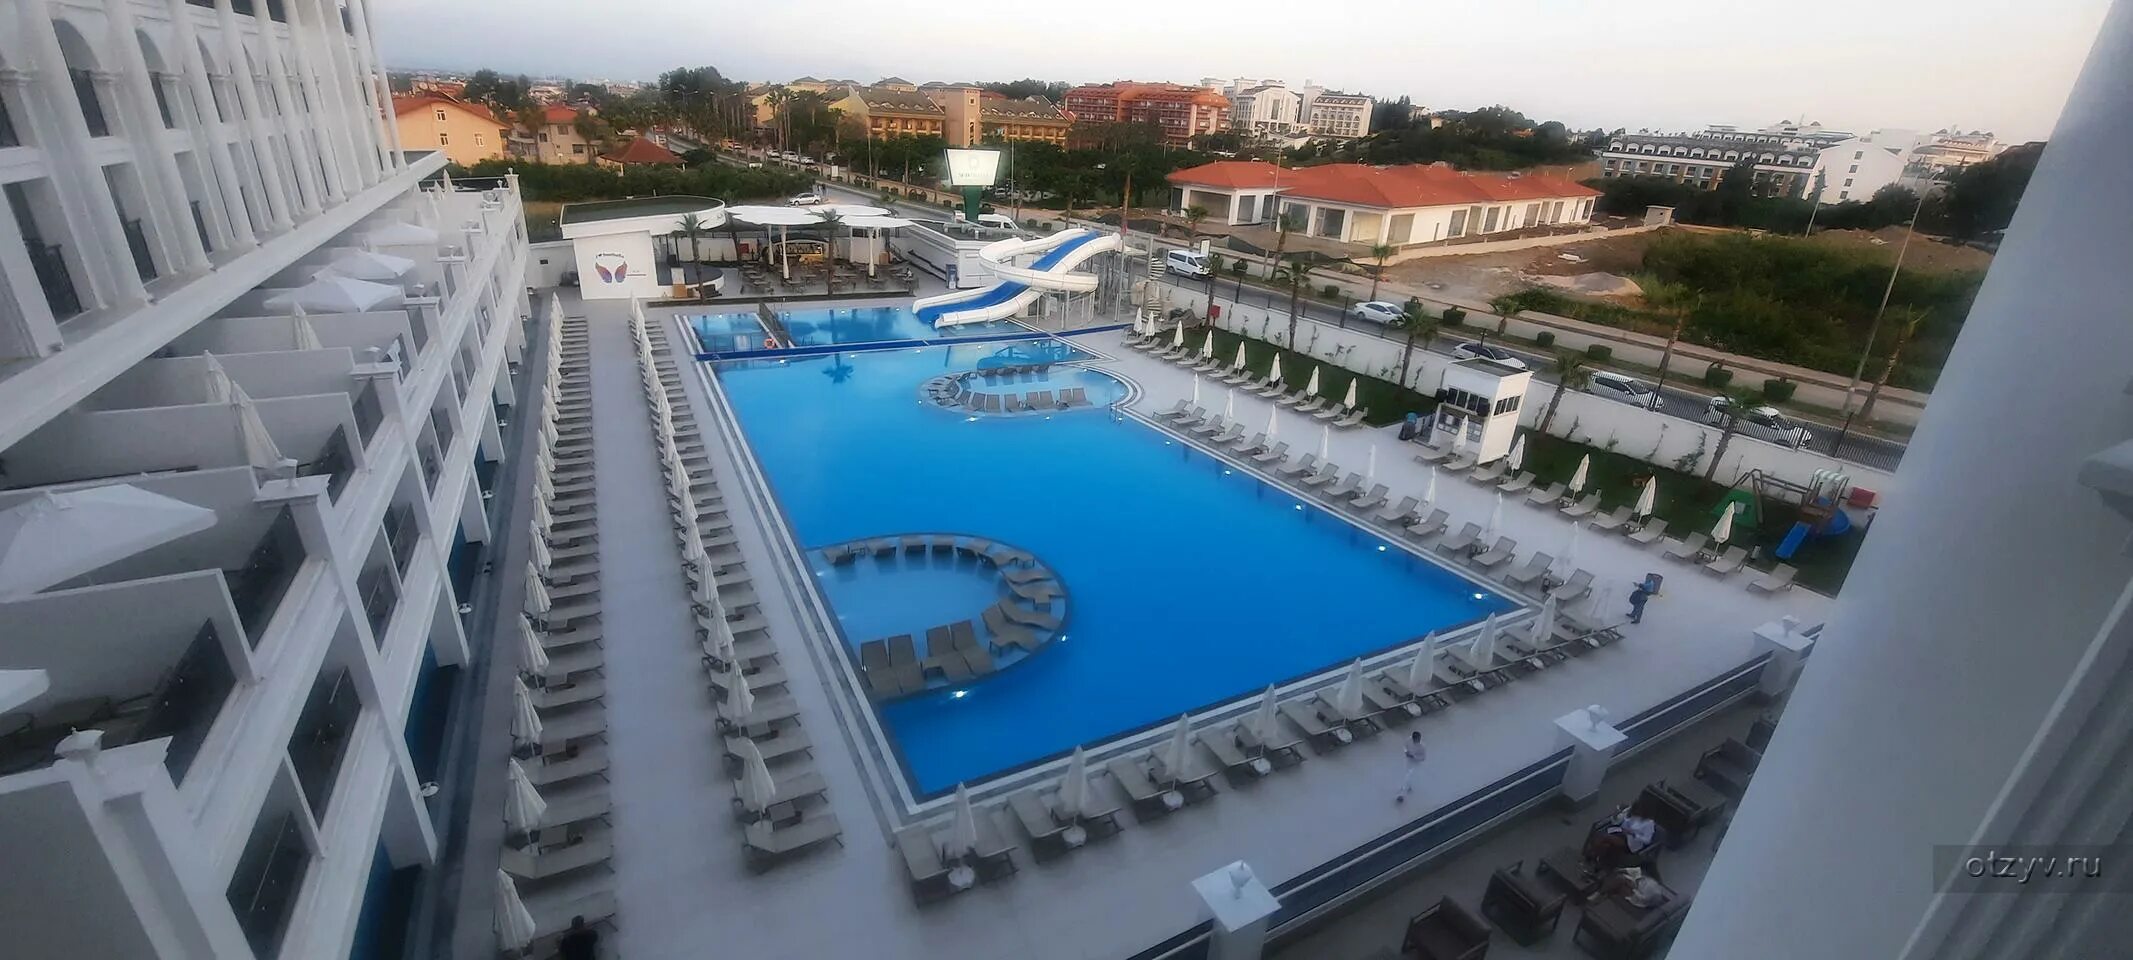 Sunthalia hotels resorts 5. Lago Hotel 5 Турция Сиде. Отель в Турции Сиде Манавгат с пиратами. Акалия Резорт отель Сиде. Sunthalia Hotels.